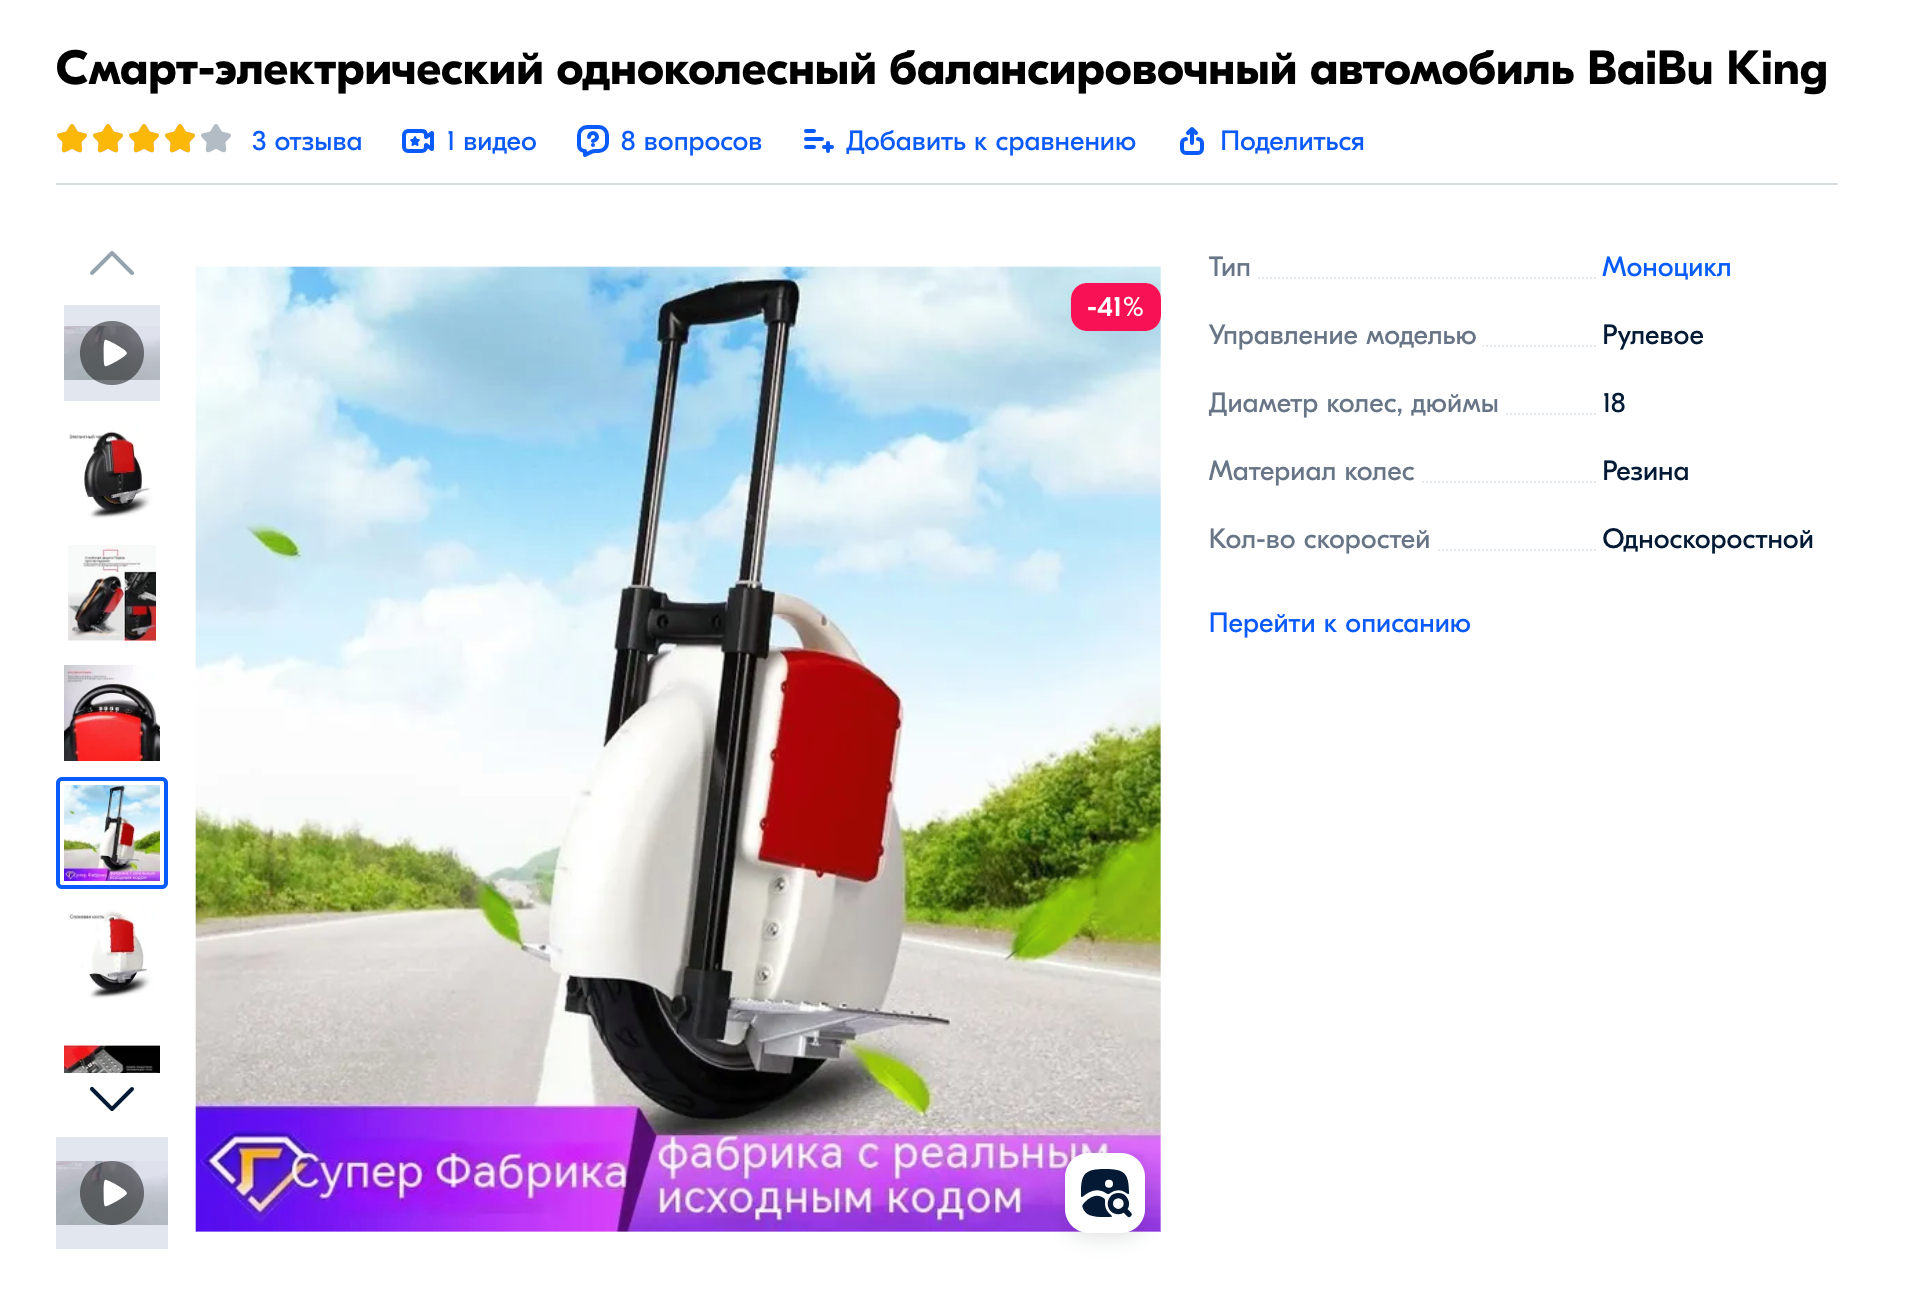 На таком моноколесе нельзя перевозить детей любого возраста: здесь просто нет пассажирских мест. Источник: ozon.ru